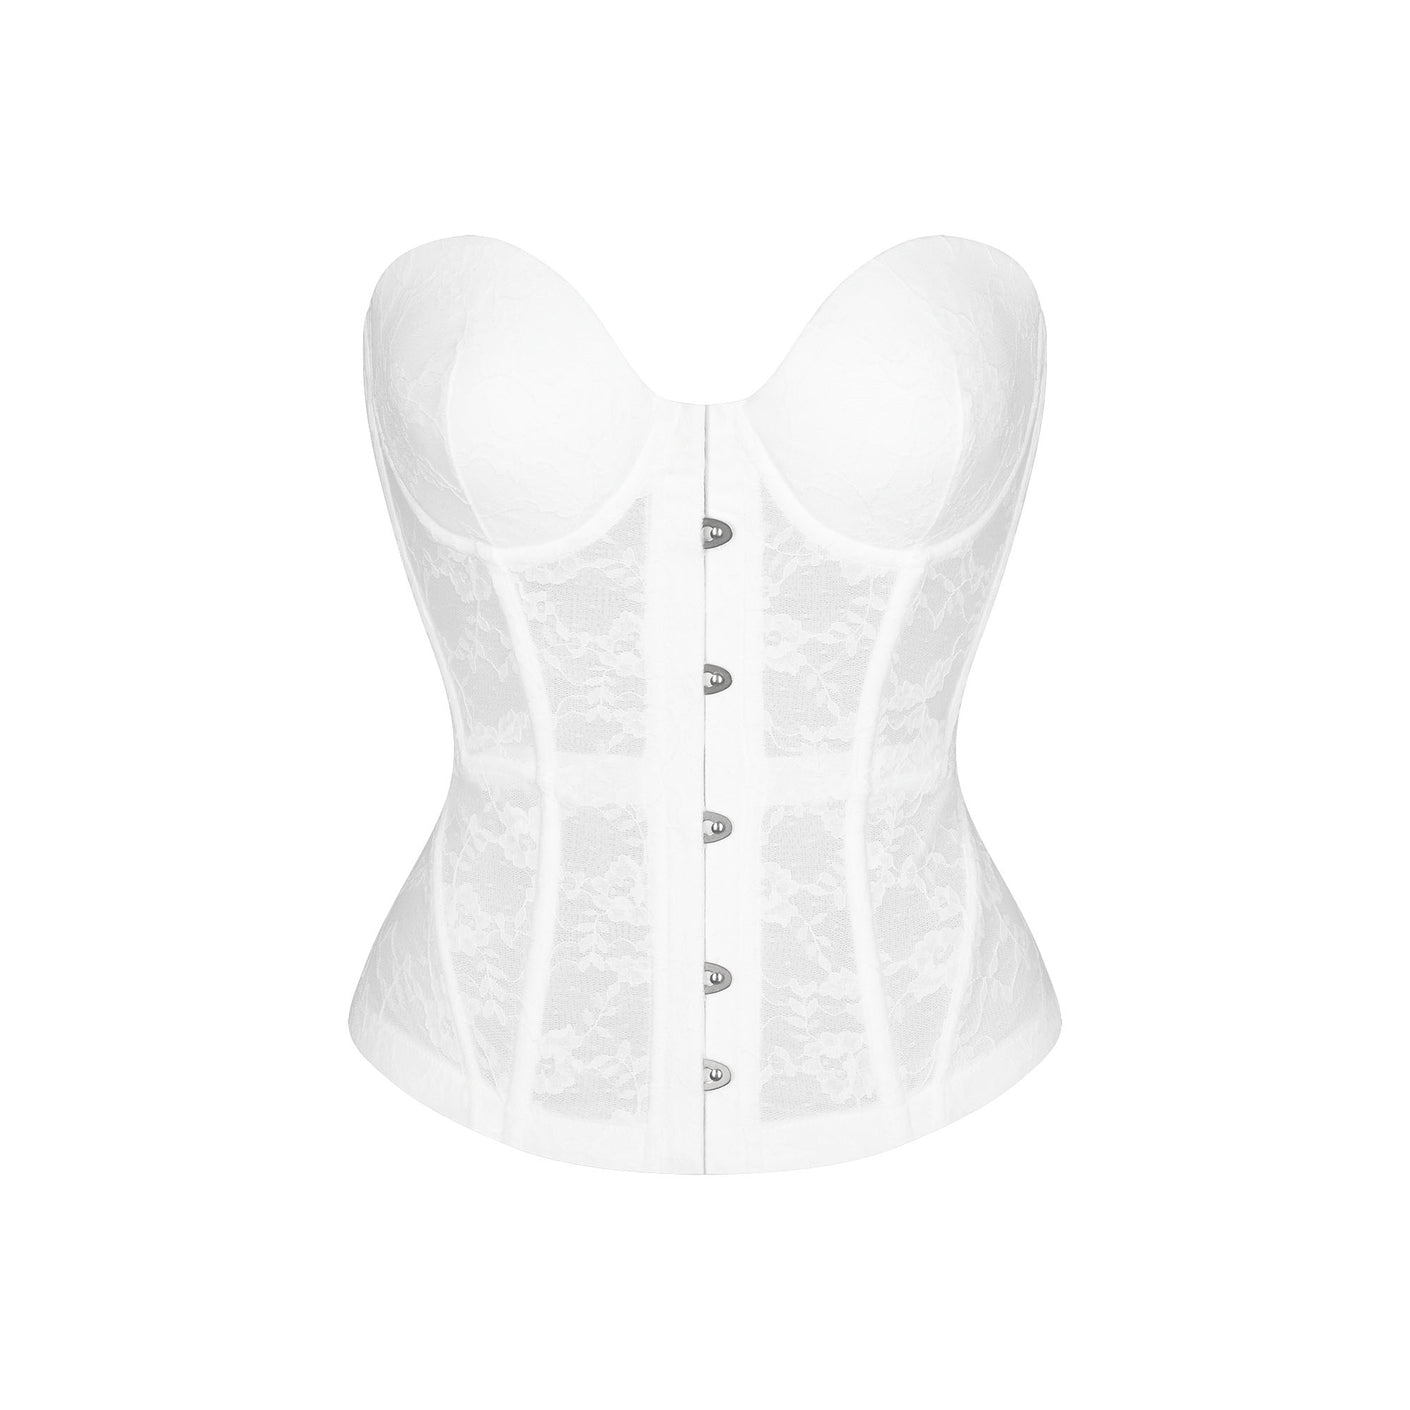 Lace corset